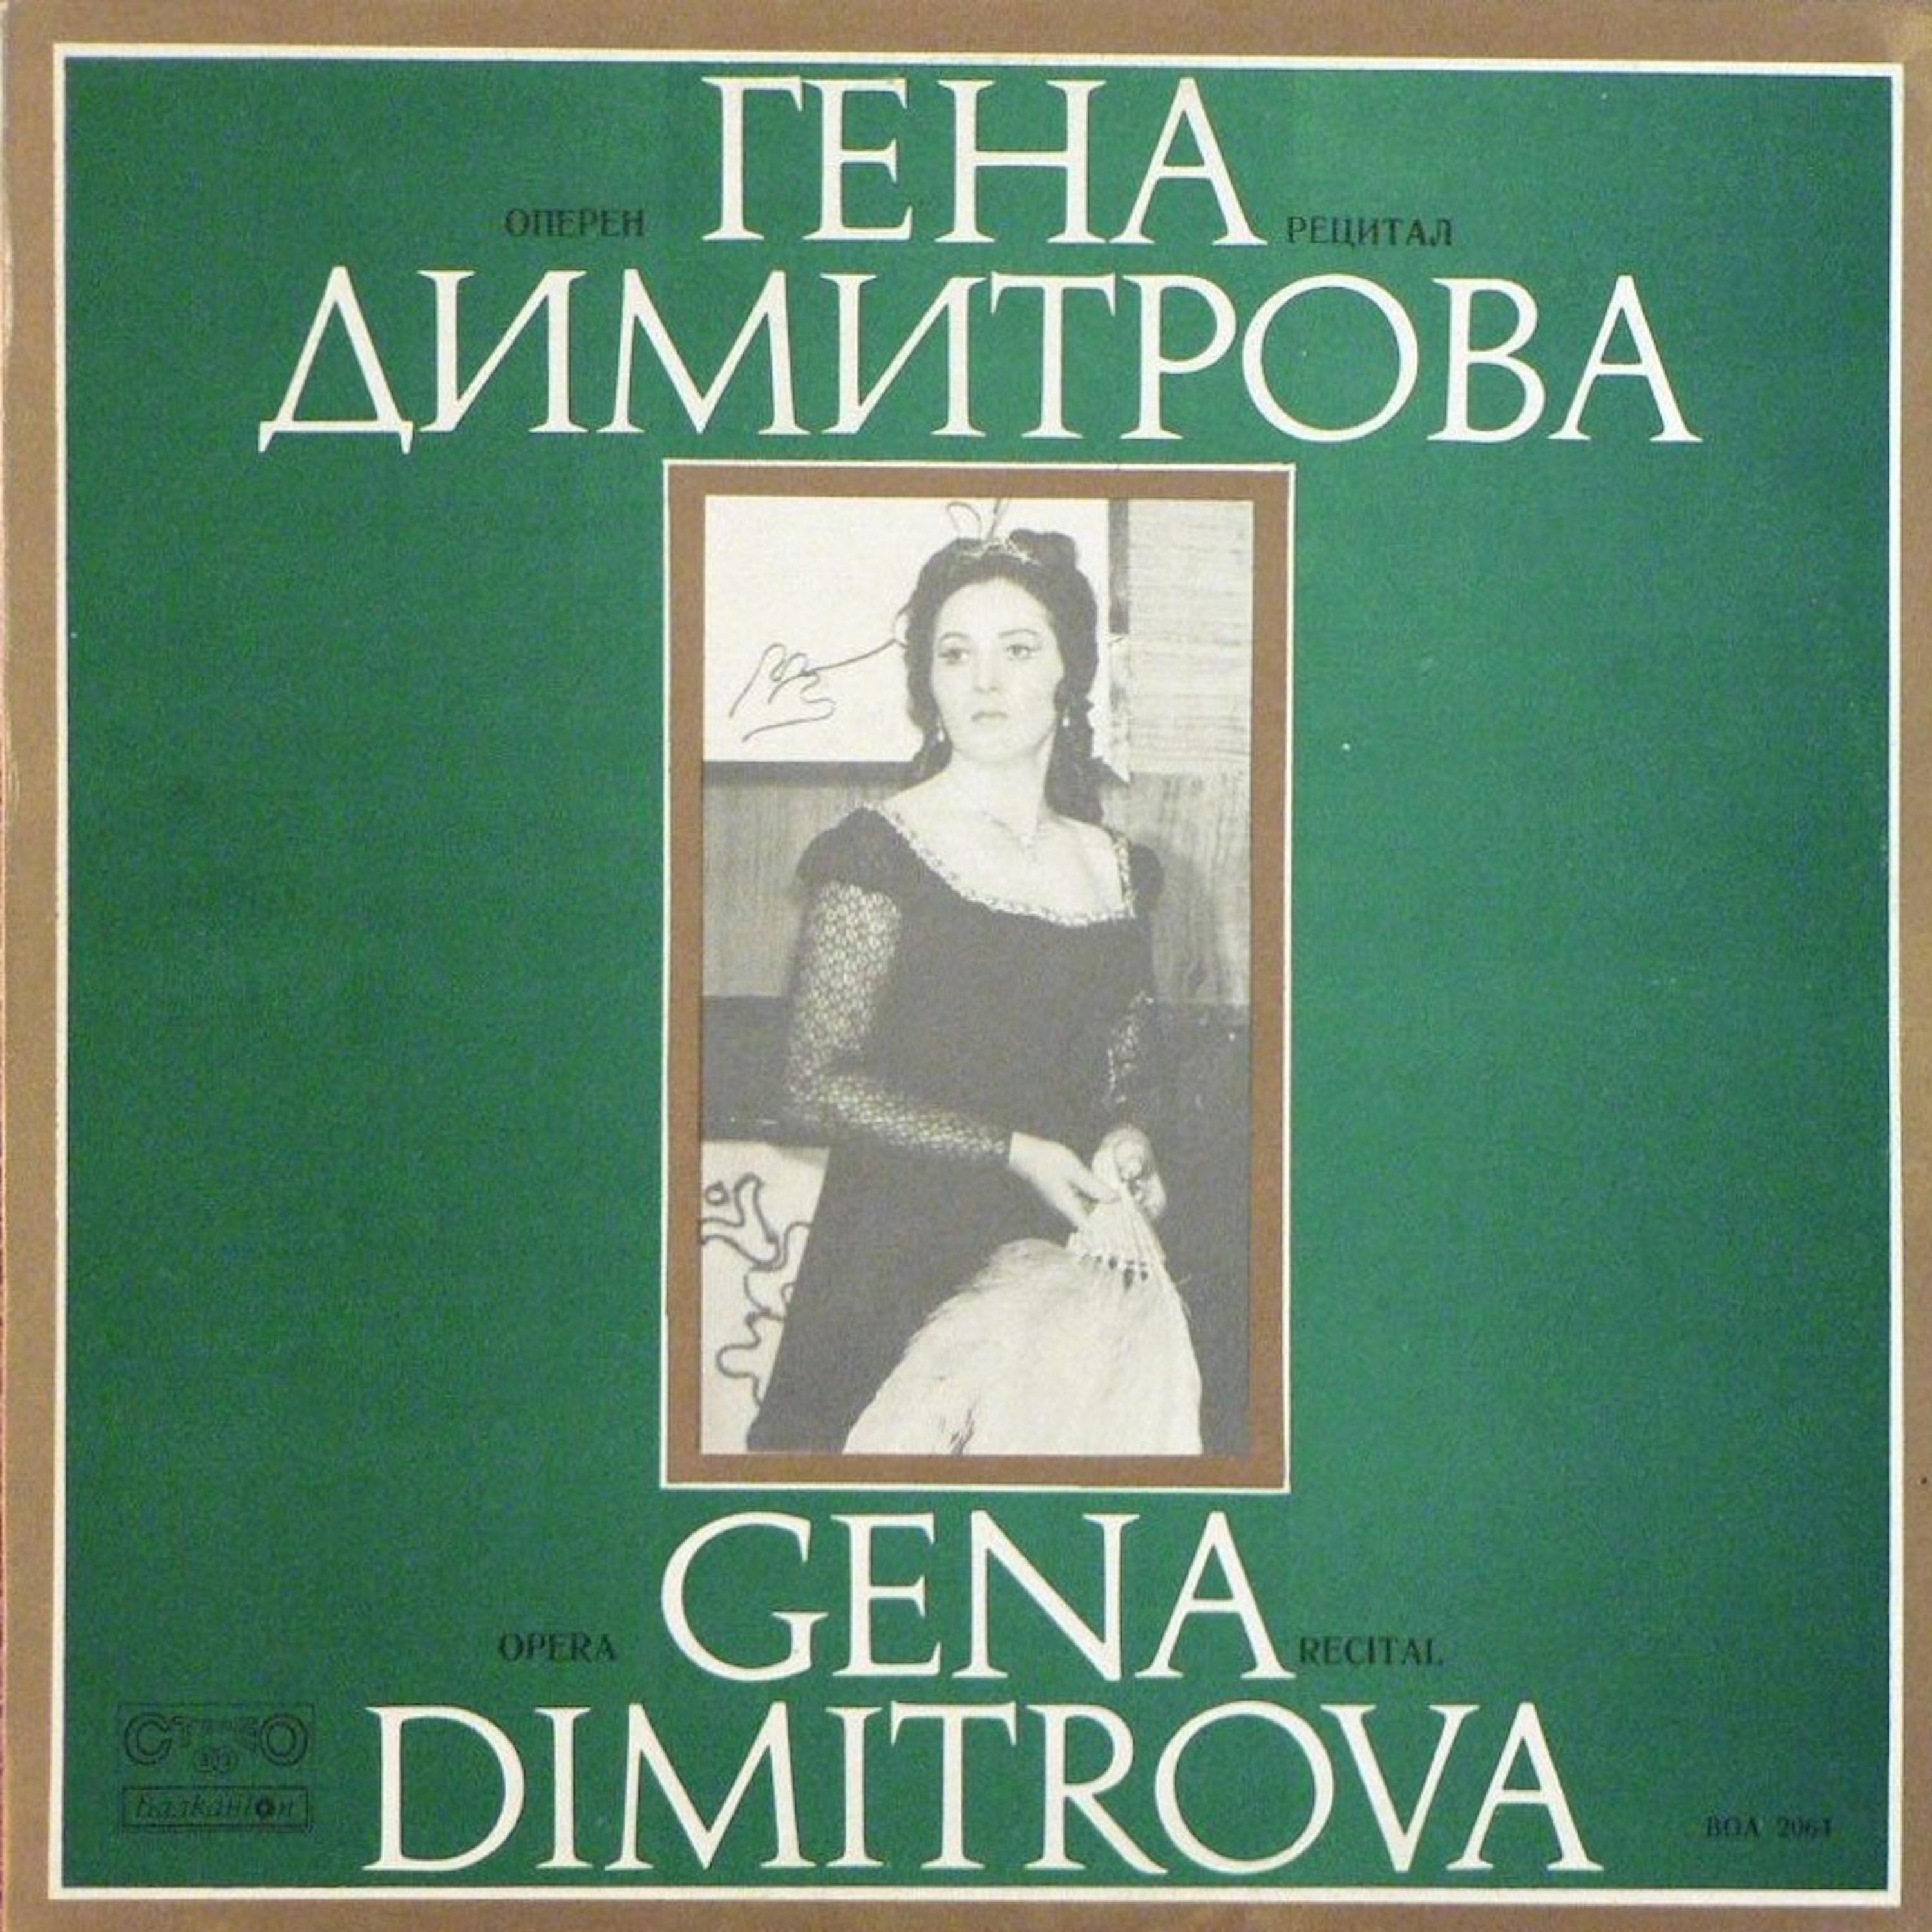 Gena Dimitrova - Aida, Act I, Scene 1: Scene and Aria, Ritorna Vincitor … I sacri nomi di padre